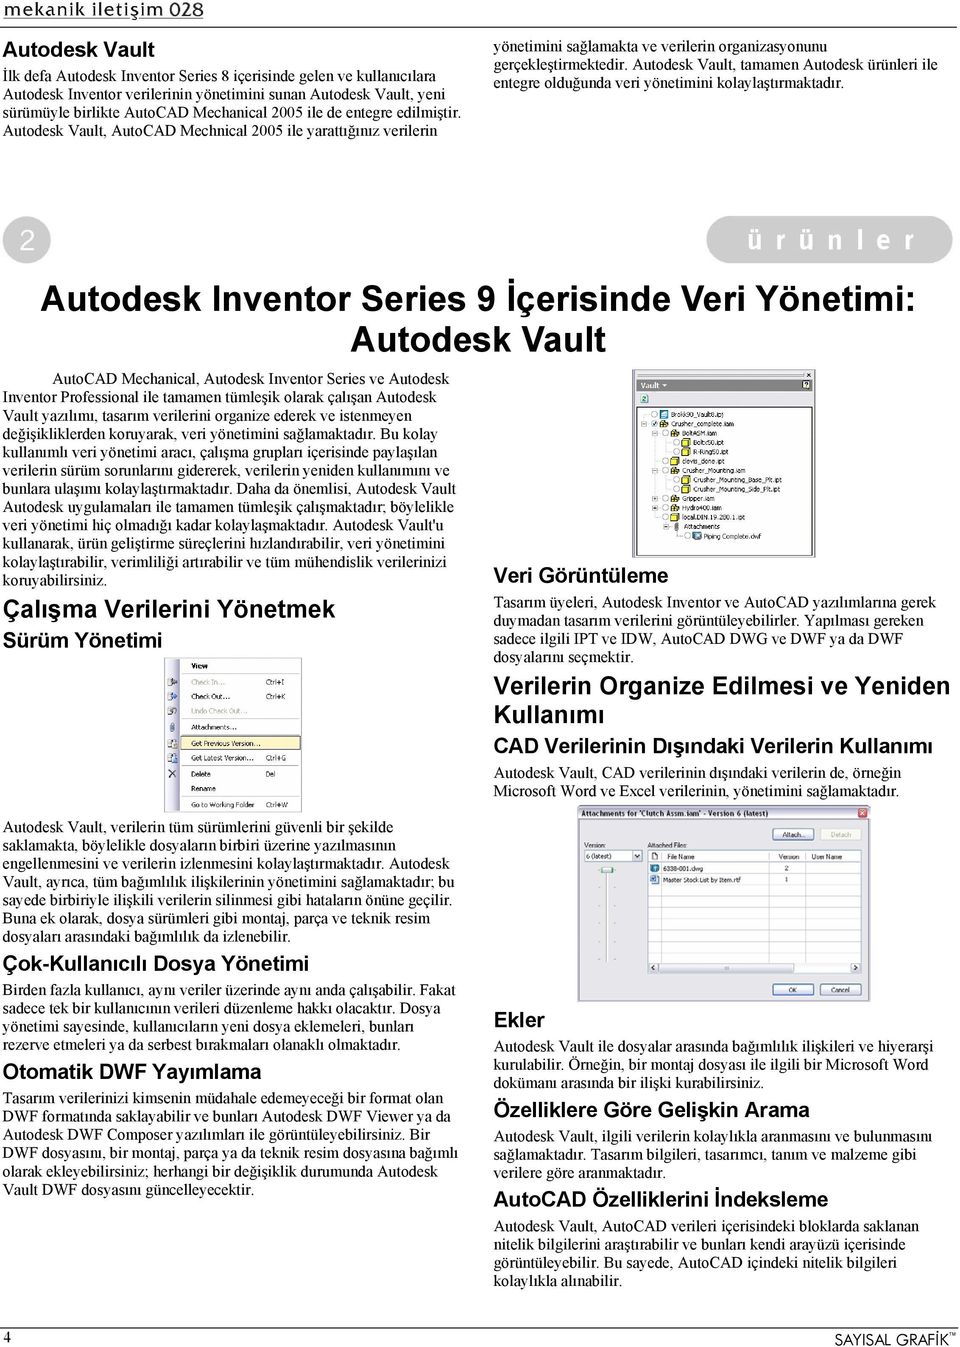 Autodesk Vault, tamamen Autodesk ürünleri ile entegre olduğunda veri yönetimini kolaylaştırmaktadır.